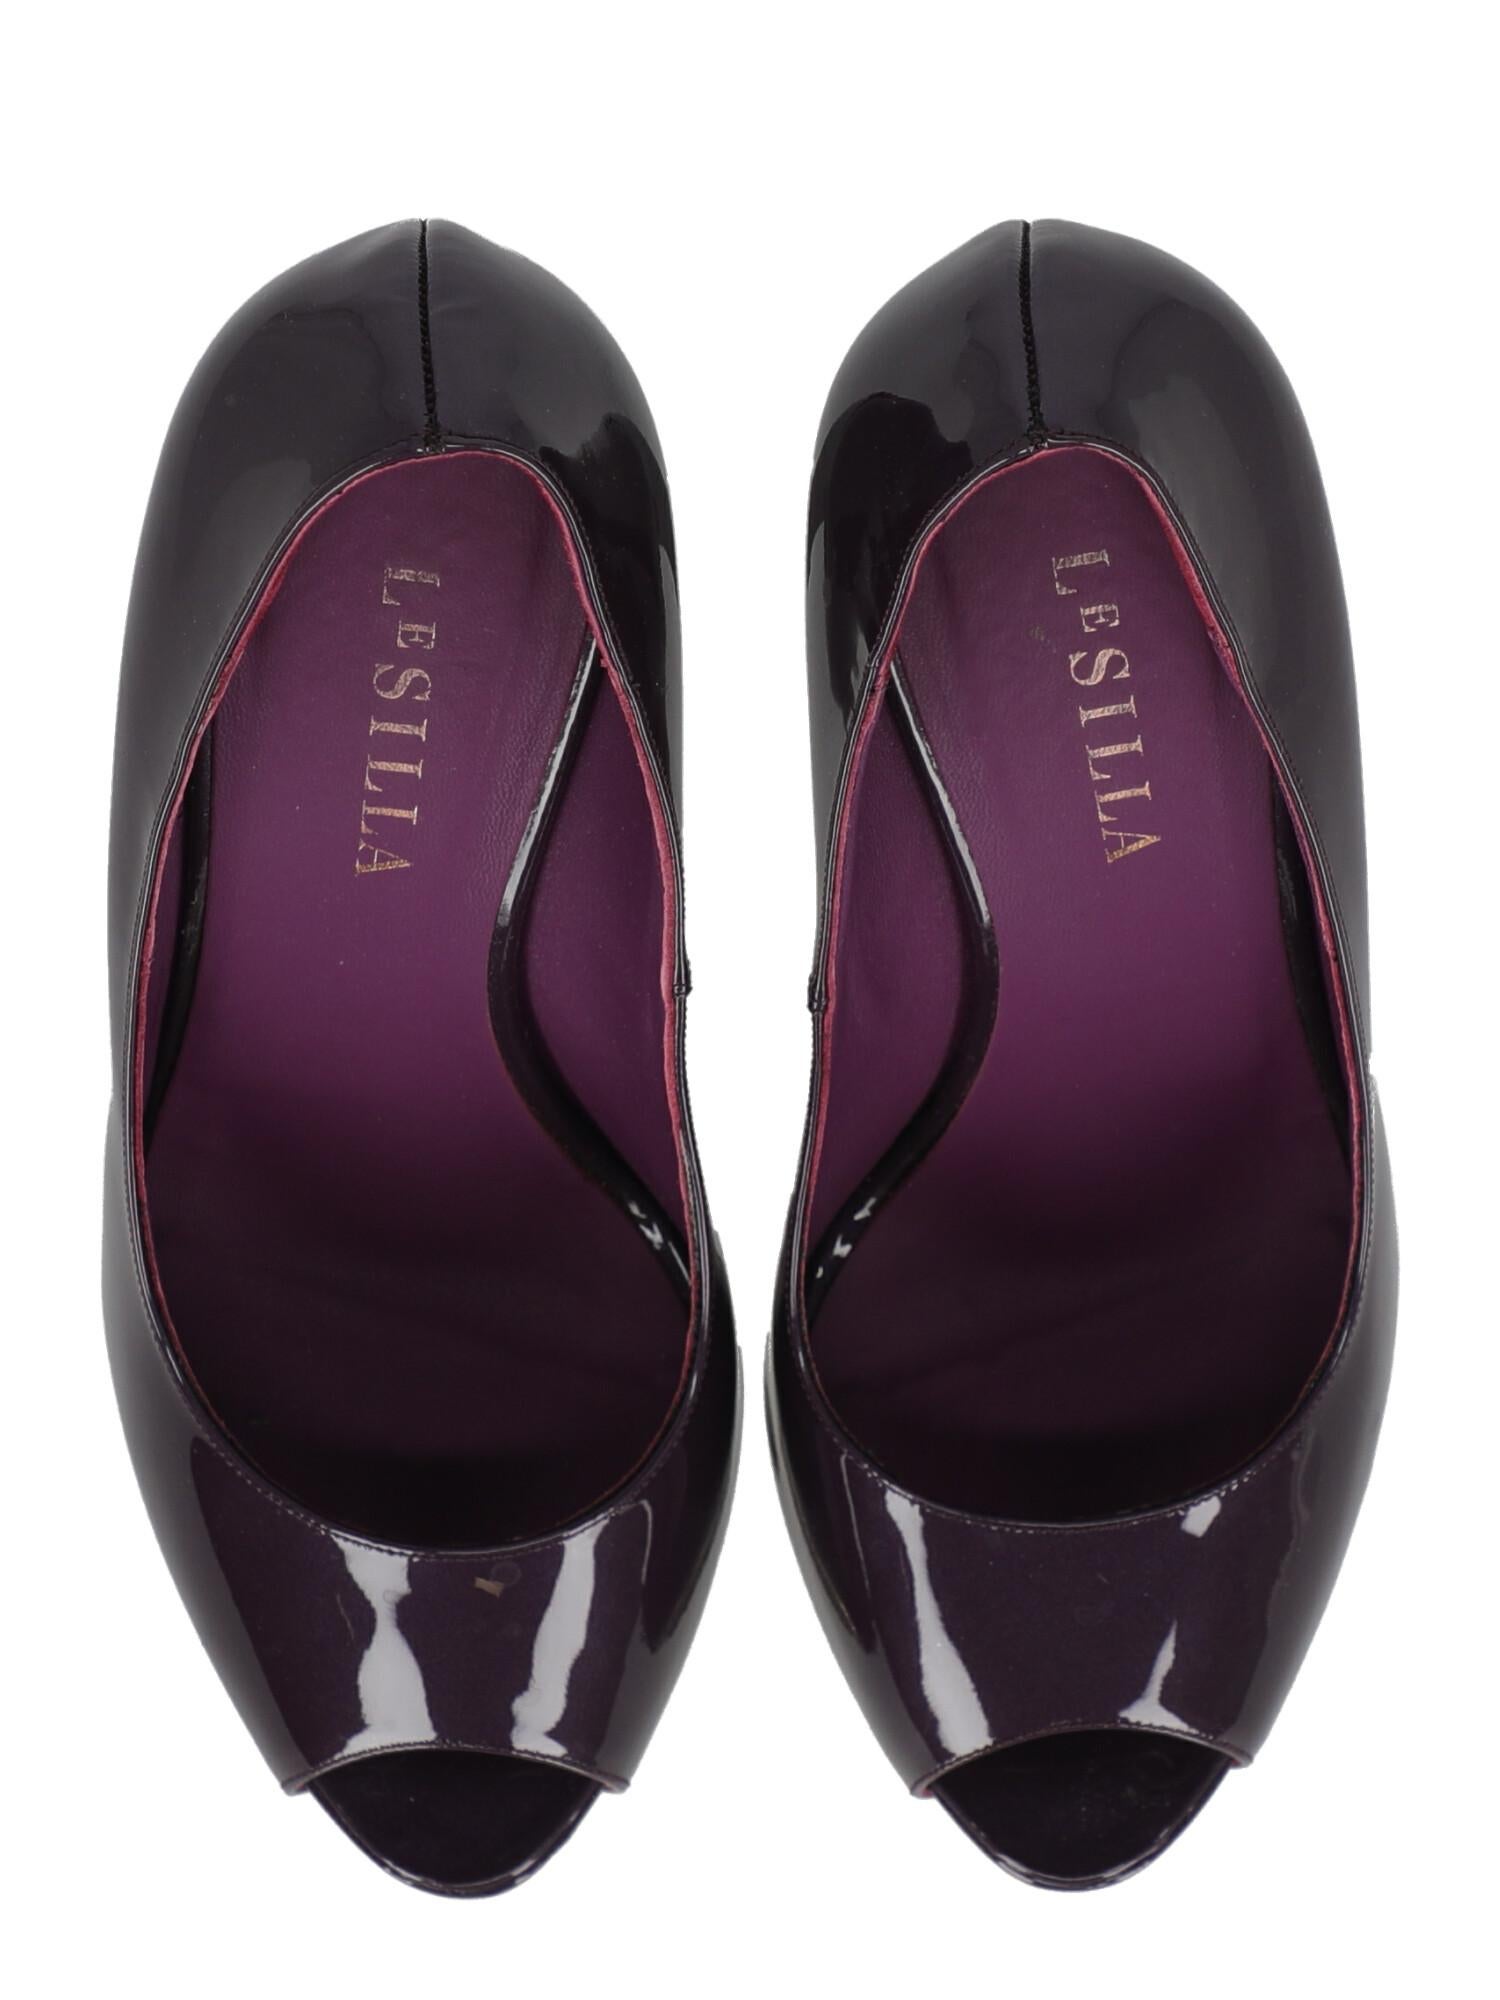 Le Silla Woman Pumps Purple Leather IT 39 For Sale 1